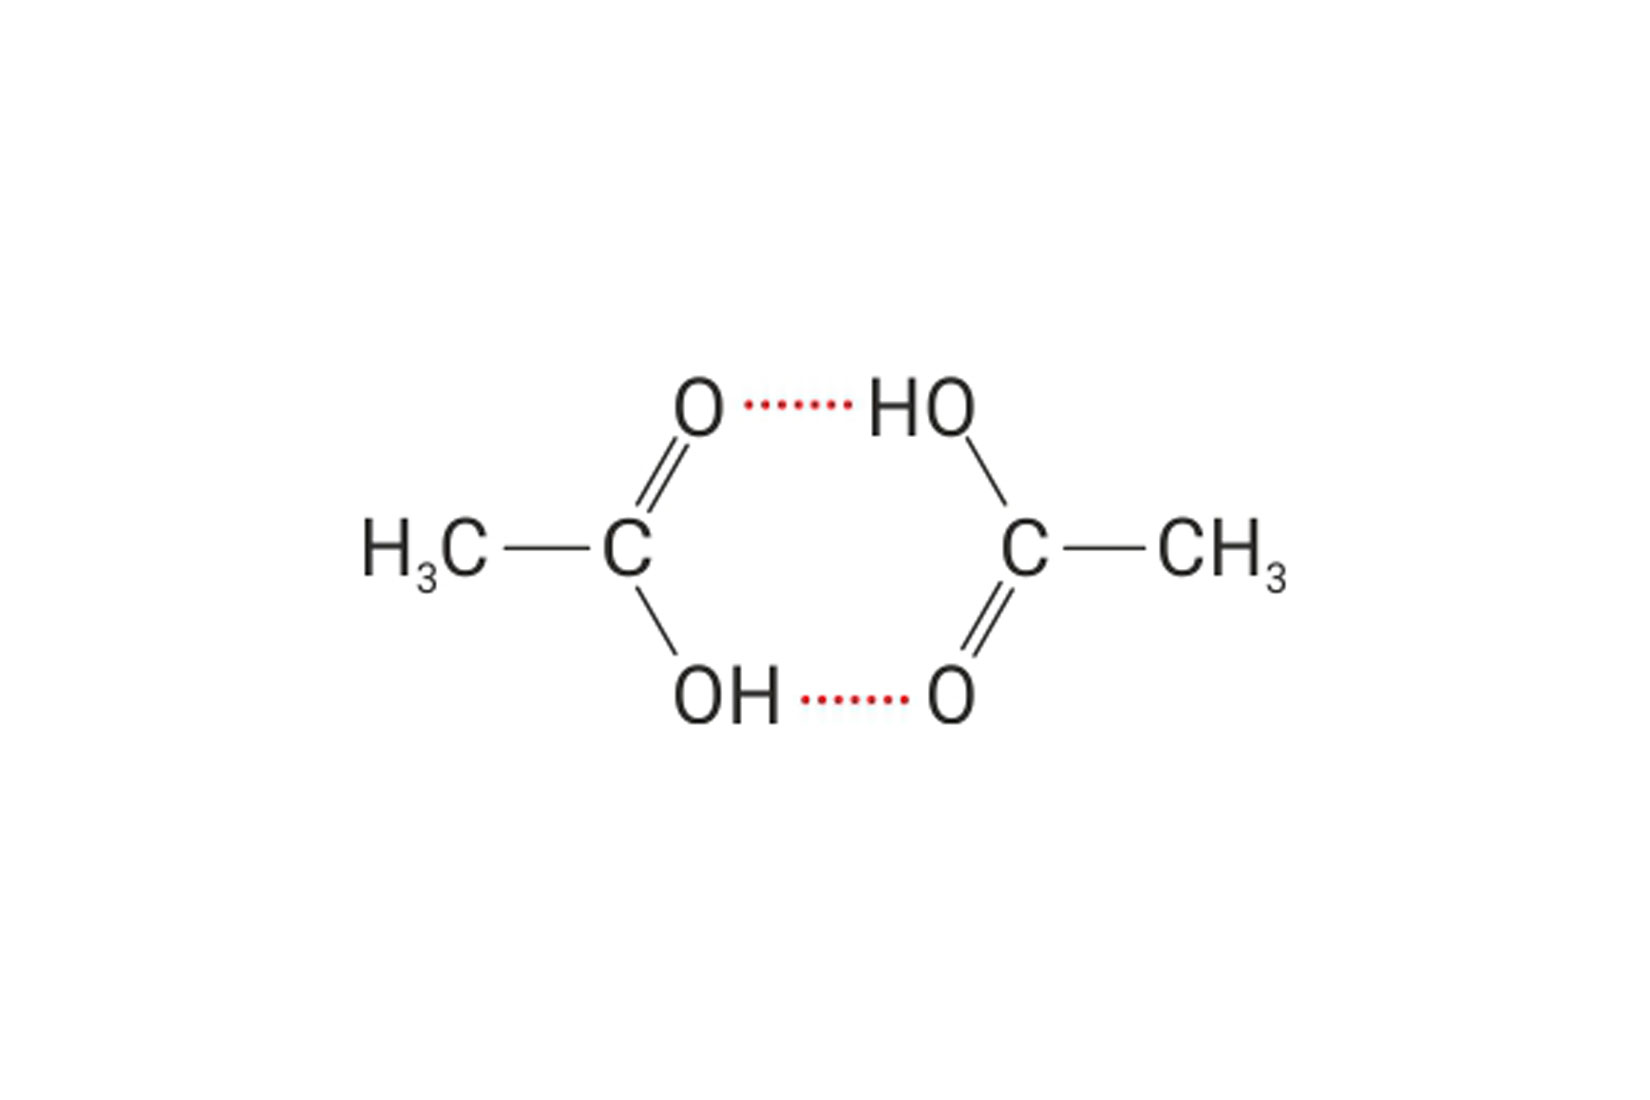 Prikazana je strukturna formula dviju molekula octene kiseline.Vodikova veza je prikazana isprekidanom, crvenom linijom.